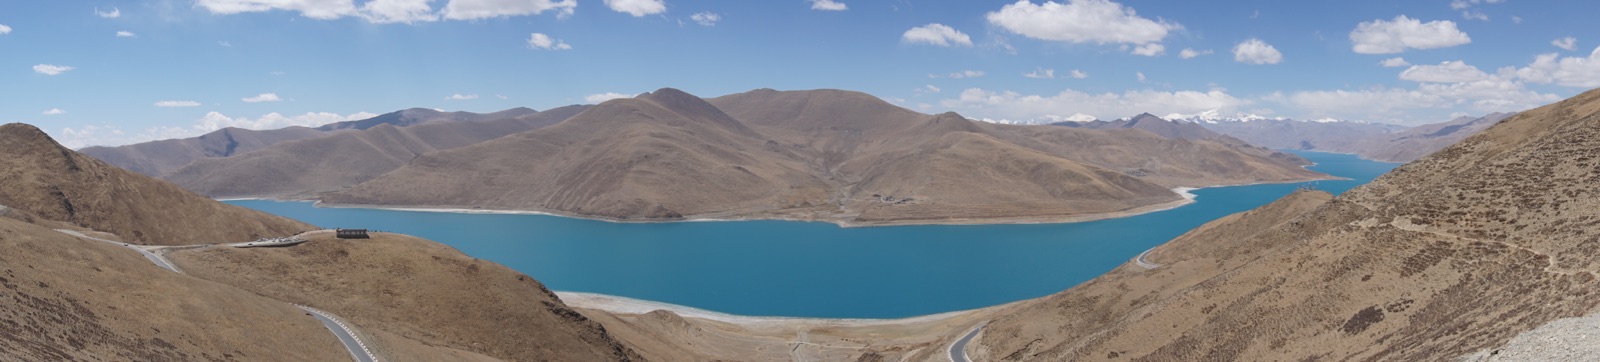 山顶上看羊湖更壮观！碰巧老天爷赏面，羊湖像一条蓝色的地毯静静地流淌。但